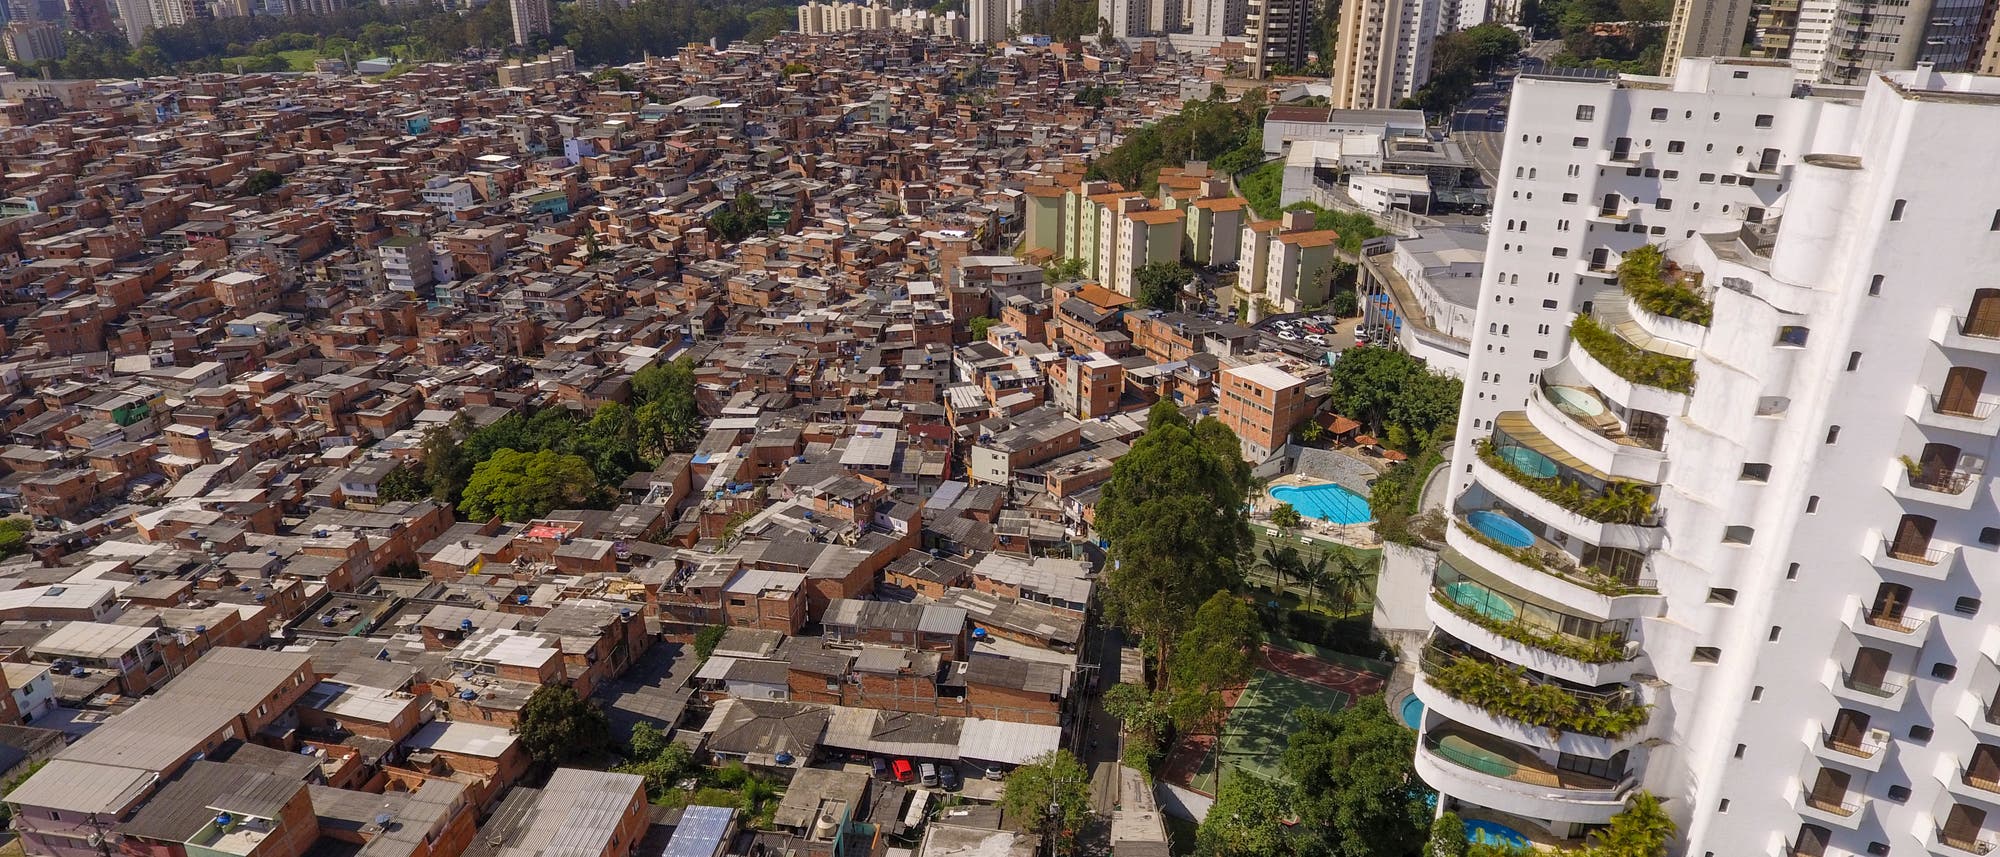 In den Riesenstädten der Schwellenländer – hier São Paulo (Brasilien) – existieren krasse Armut und verschwenderischer Reichtum Tür an Tür.